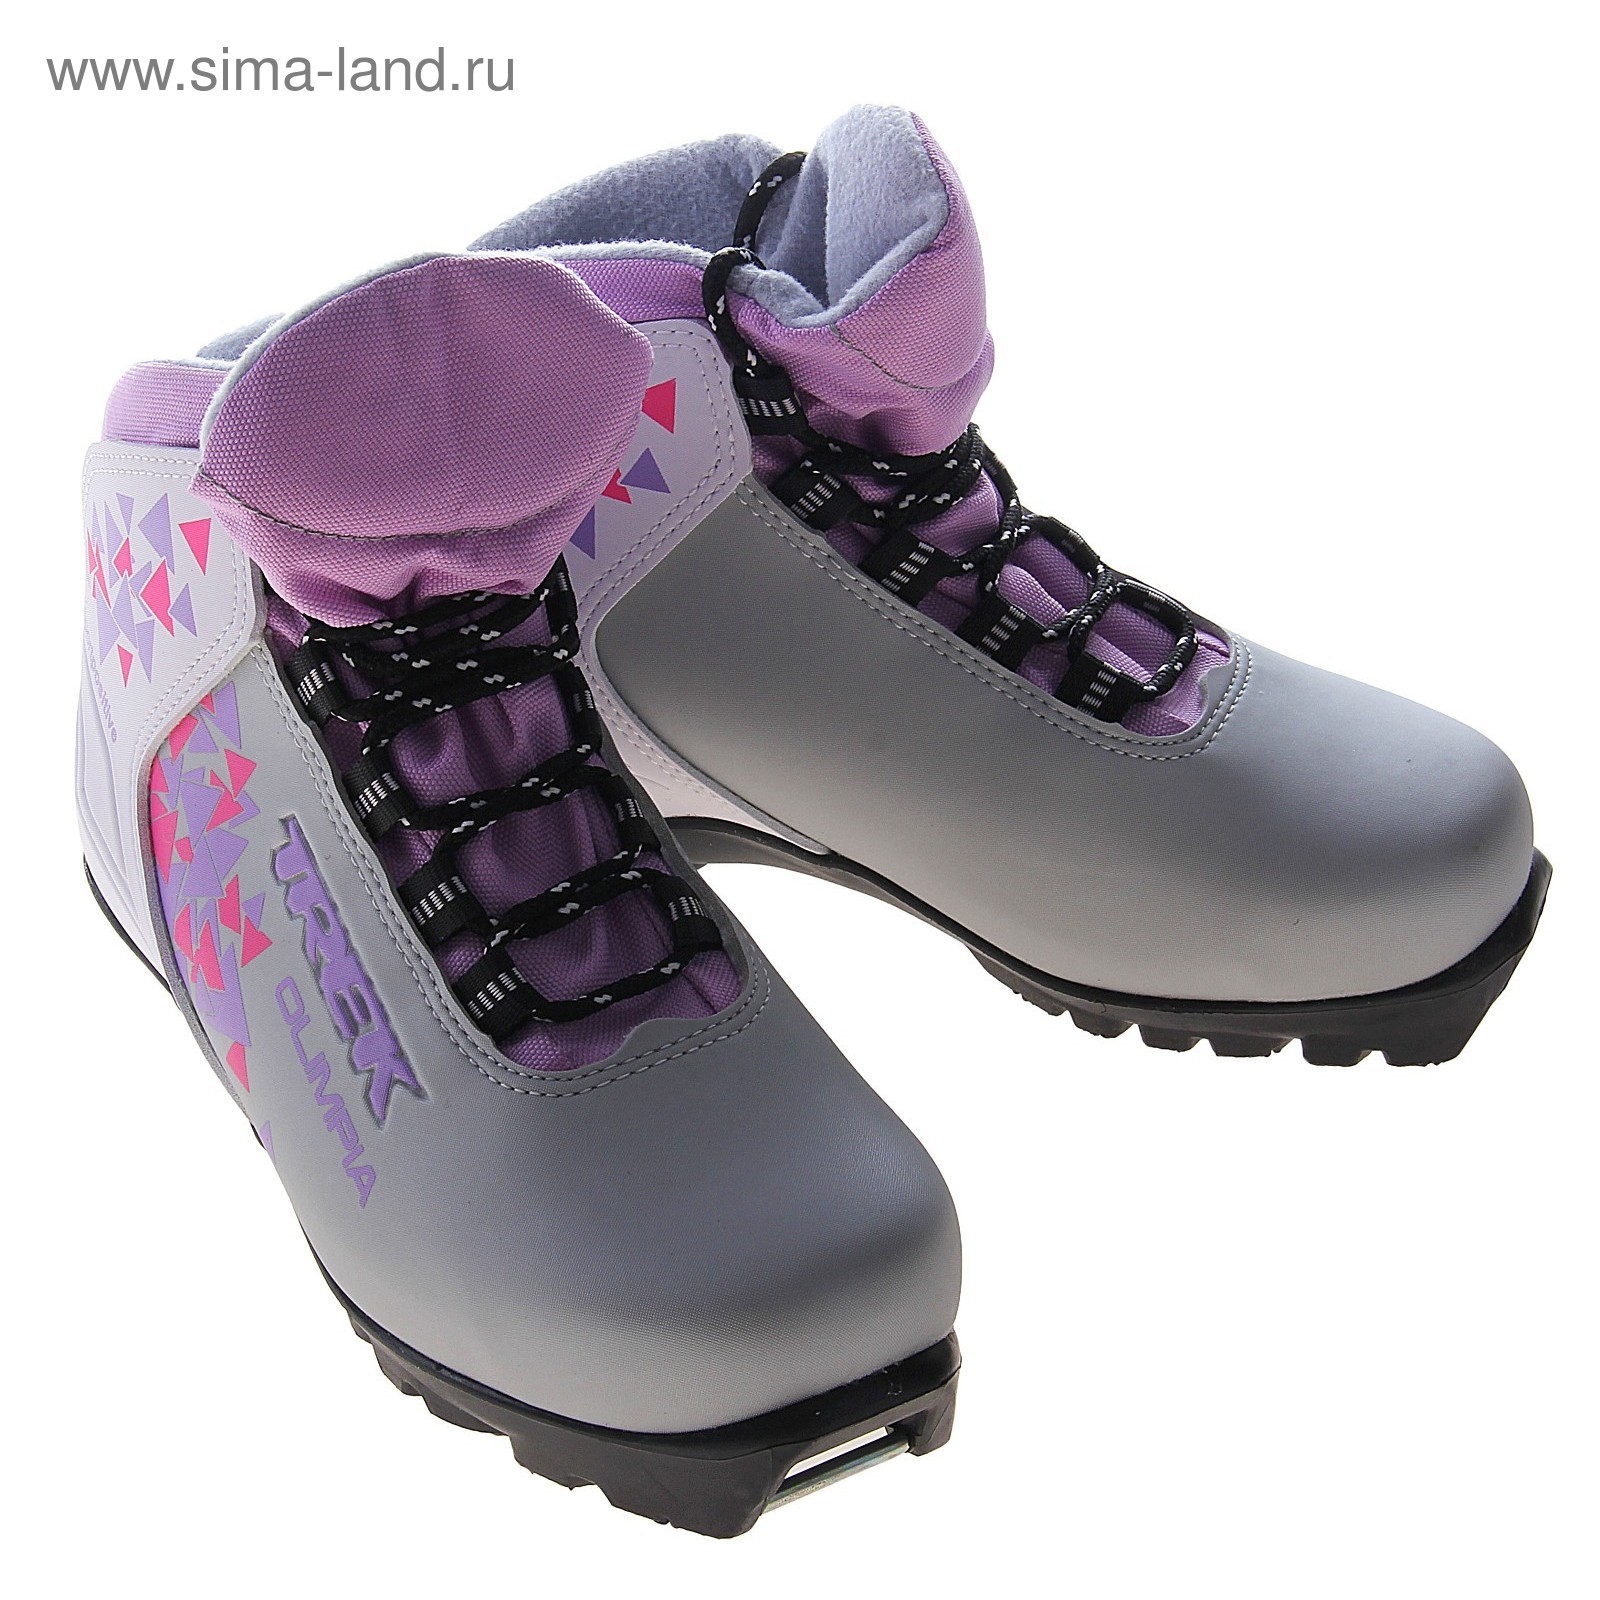 Ботинки лыжные TREK Olimpia NNN ИК, размер 37, цвет: серебристый